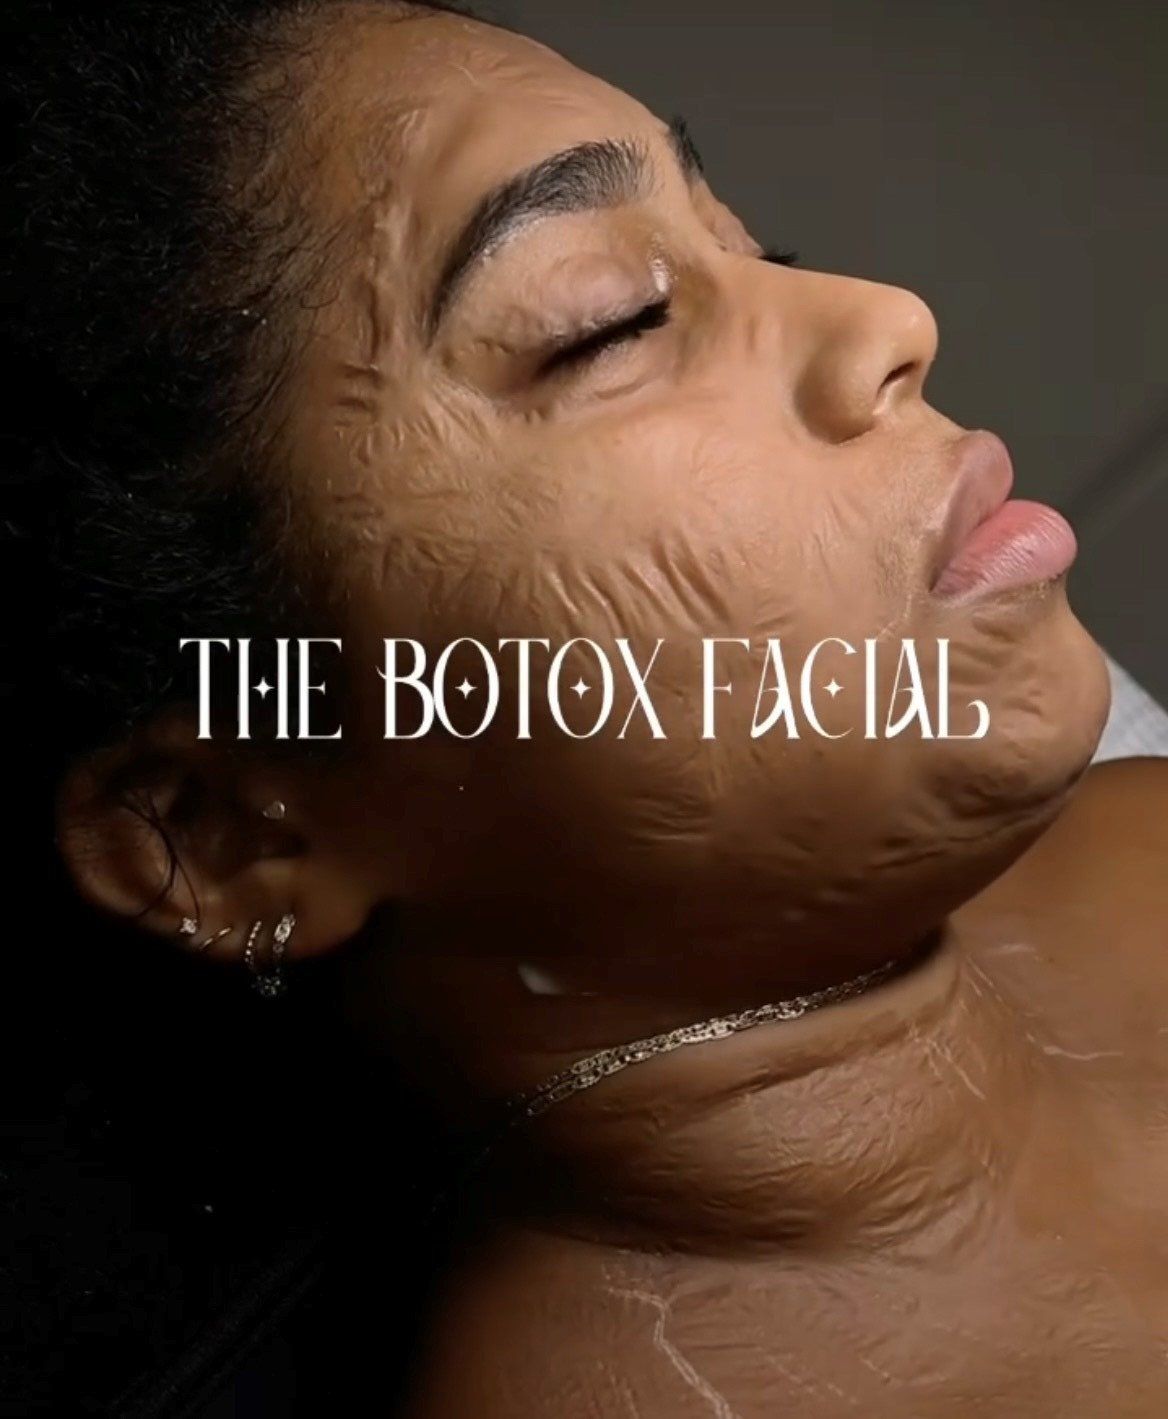 The Botox facial